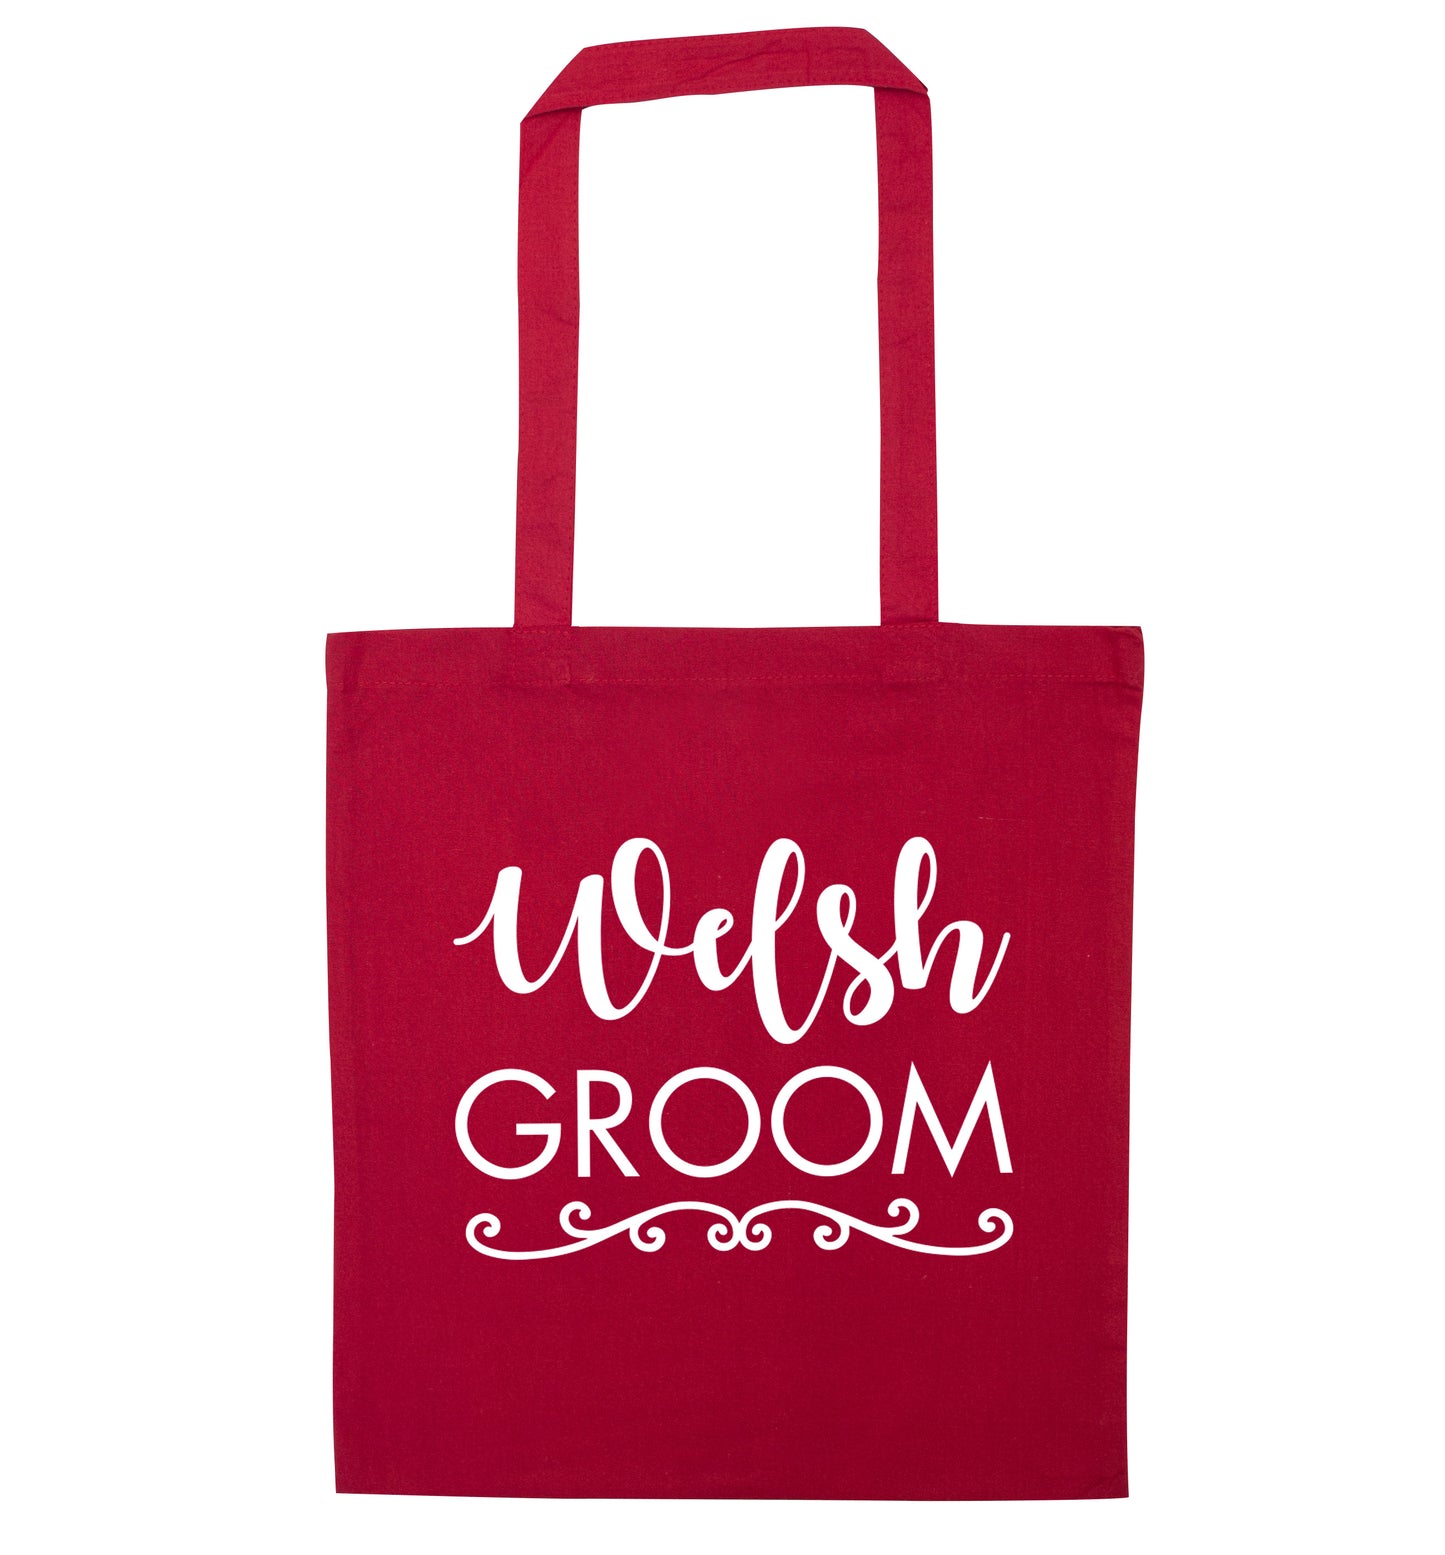 Welsh groom red tote bag